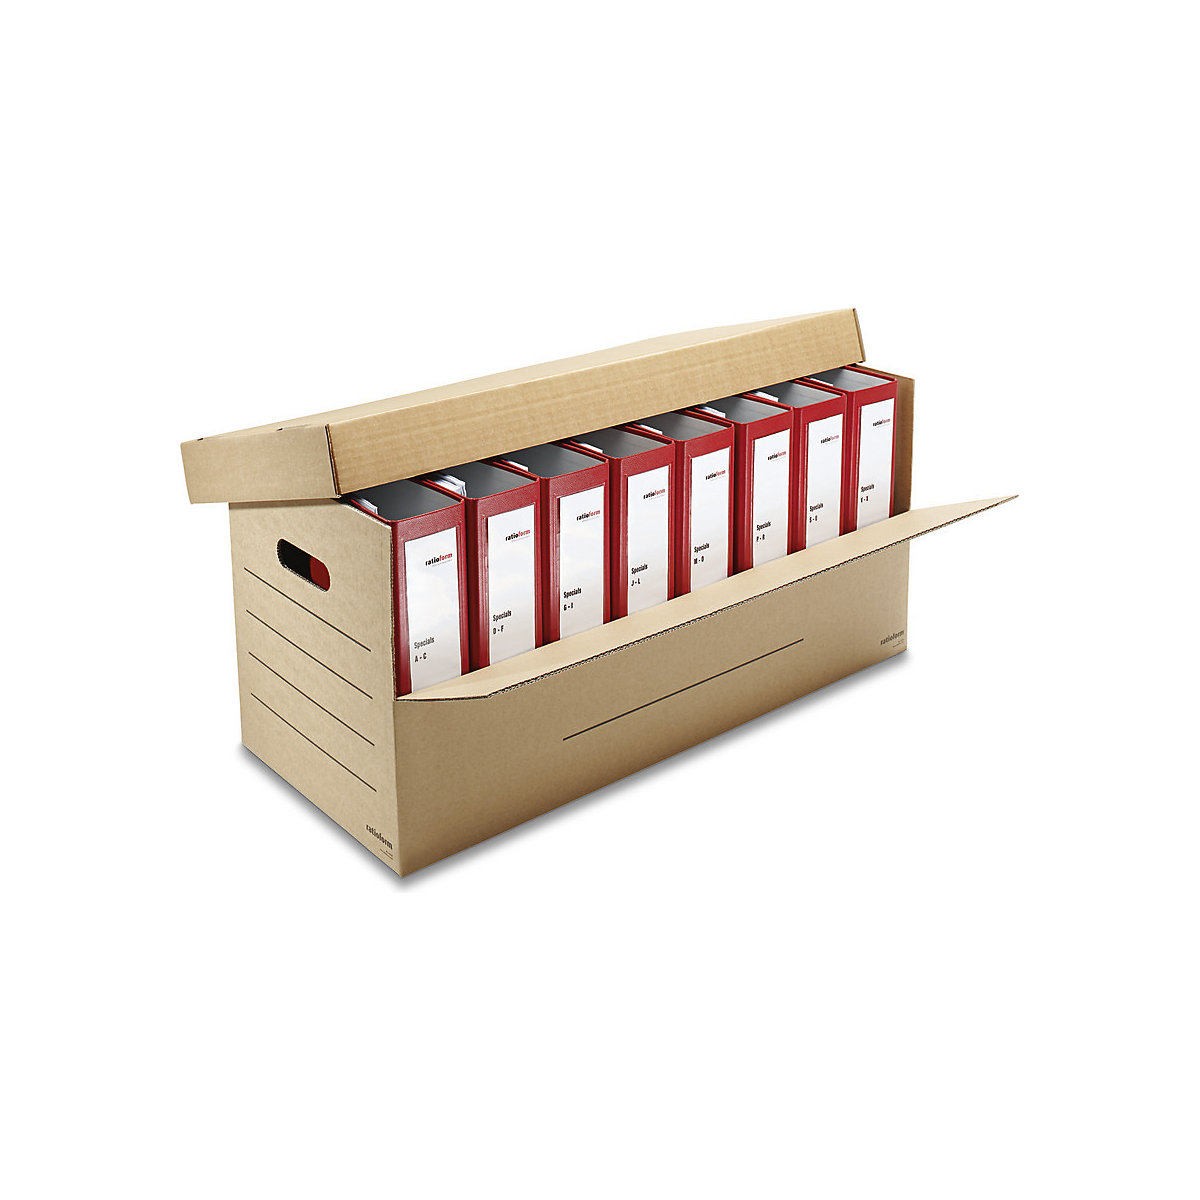 Ordner-Karton, für 3 – 8 breite Ordner mit Deckel, Innenmaße 690 x 300 x 320 mm, ab 25 Stk-1